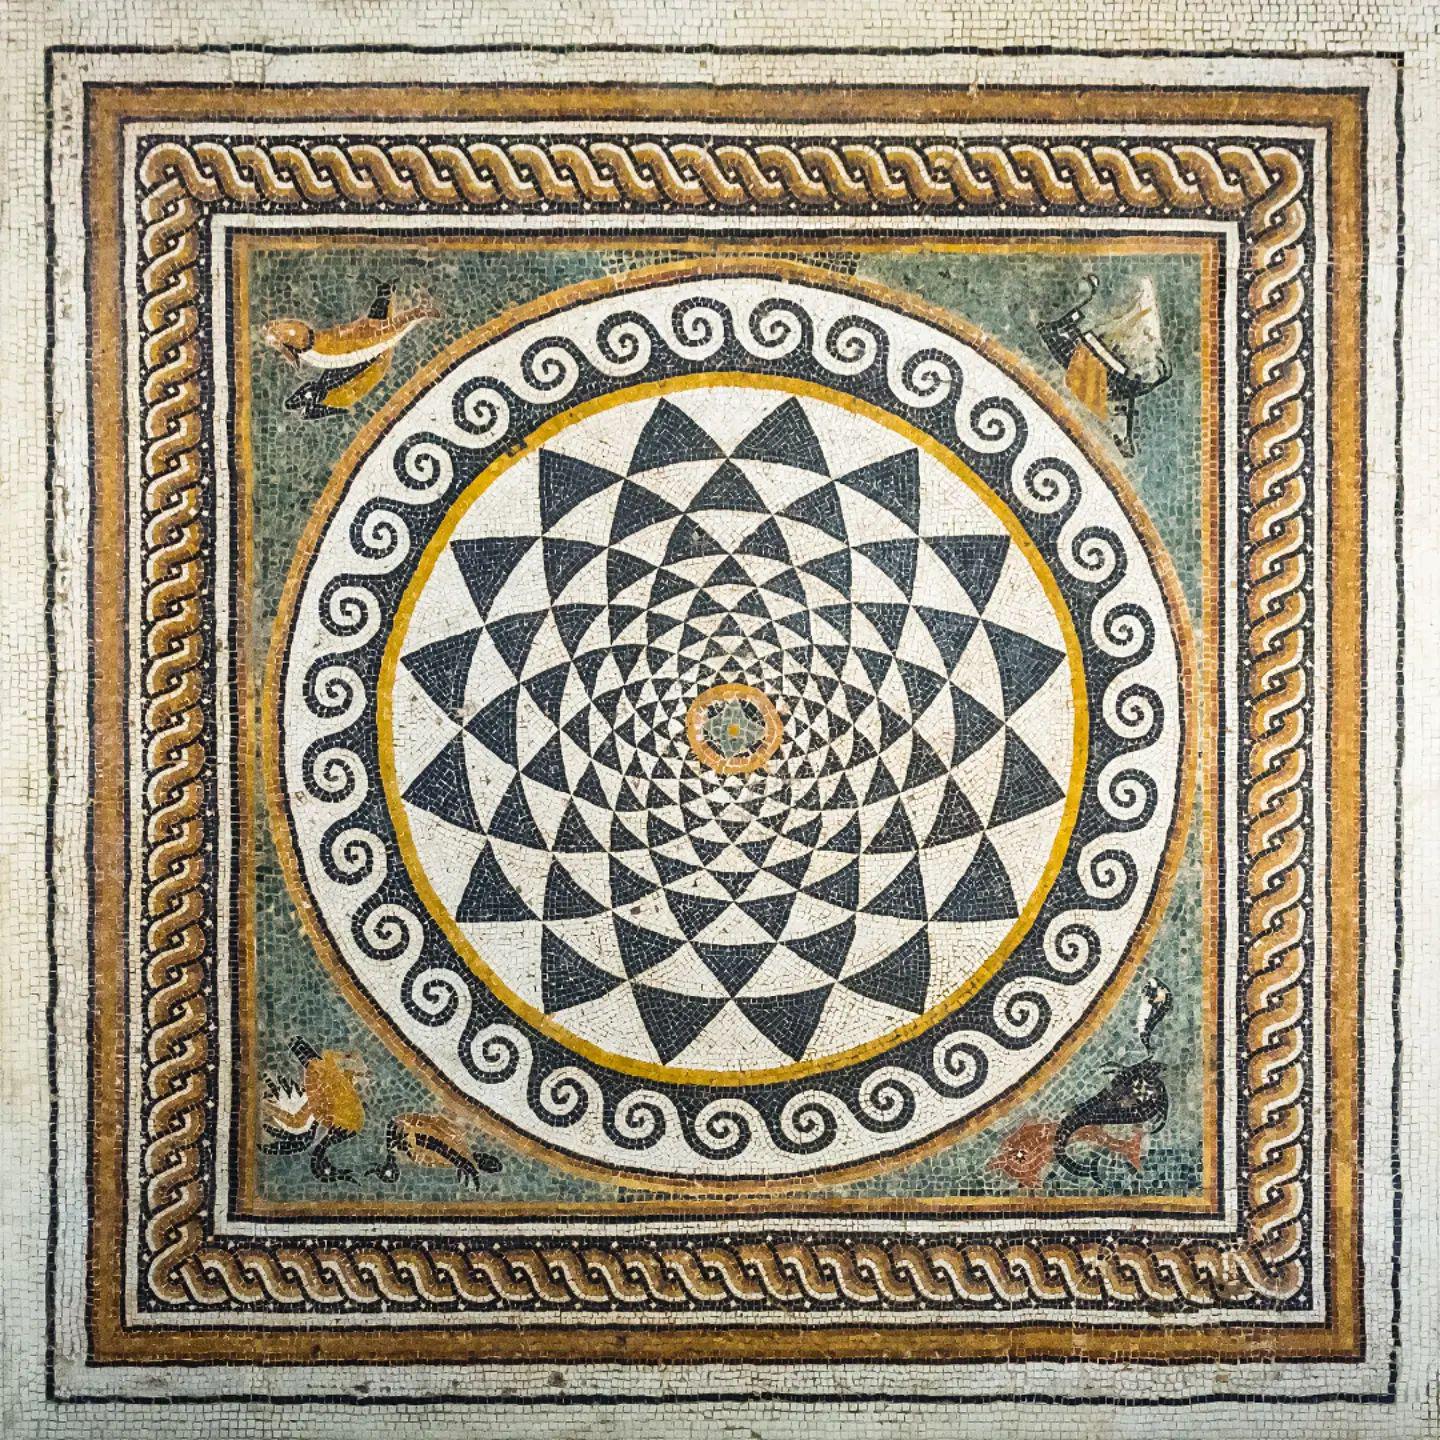 An ancient Roman mosaic, 2nd century CE, now housed at the Musée de la Romanité in Nîmes, France.jpeg